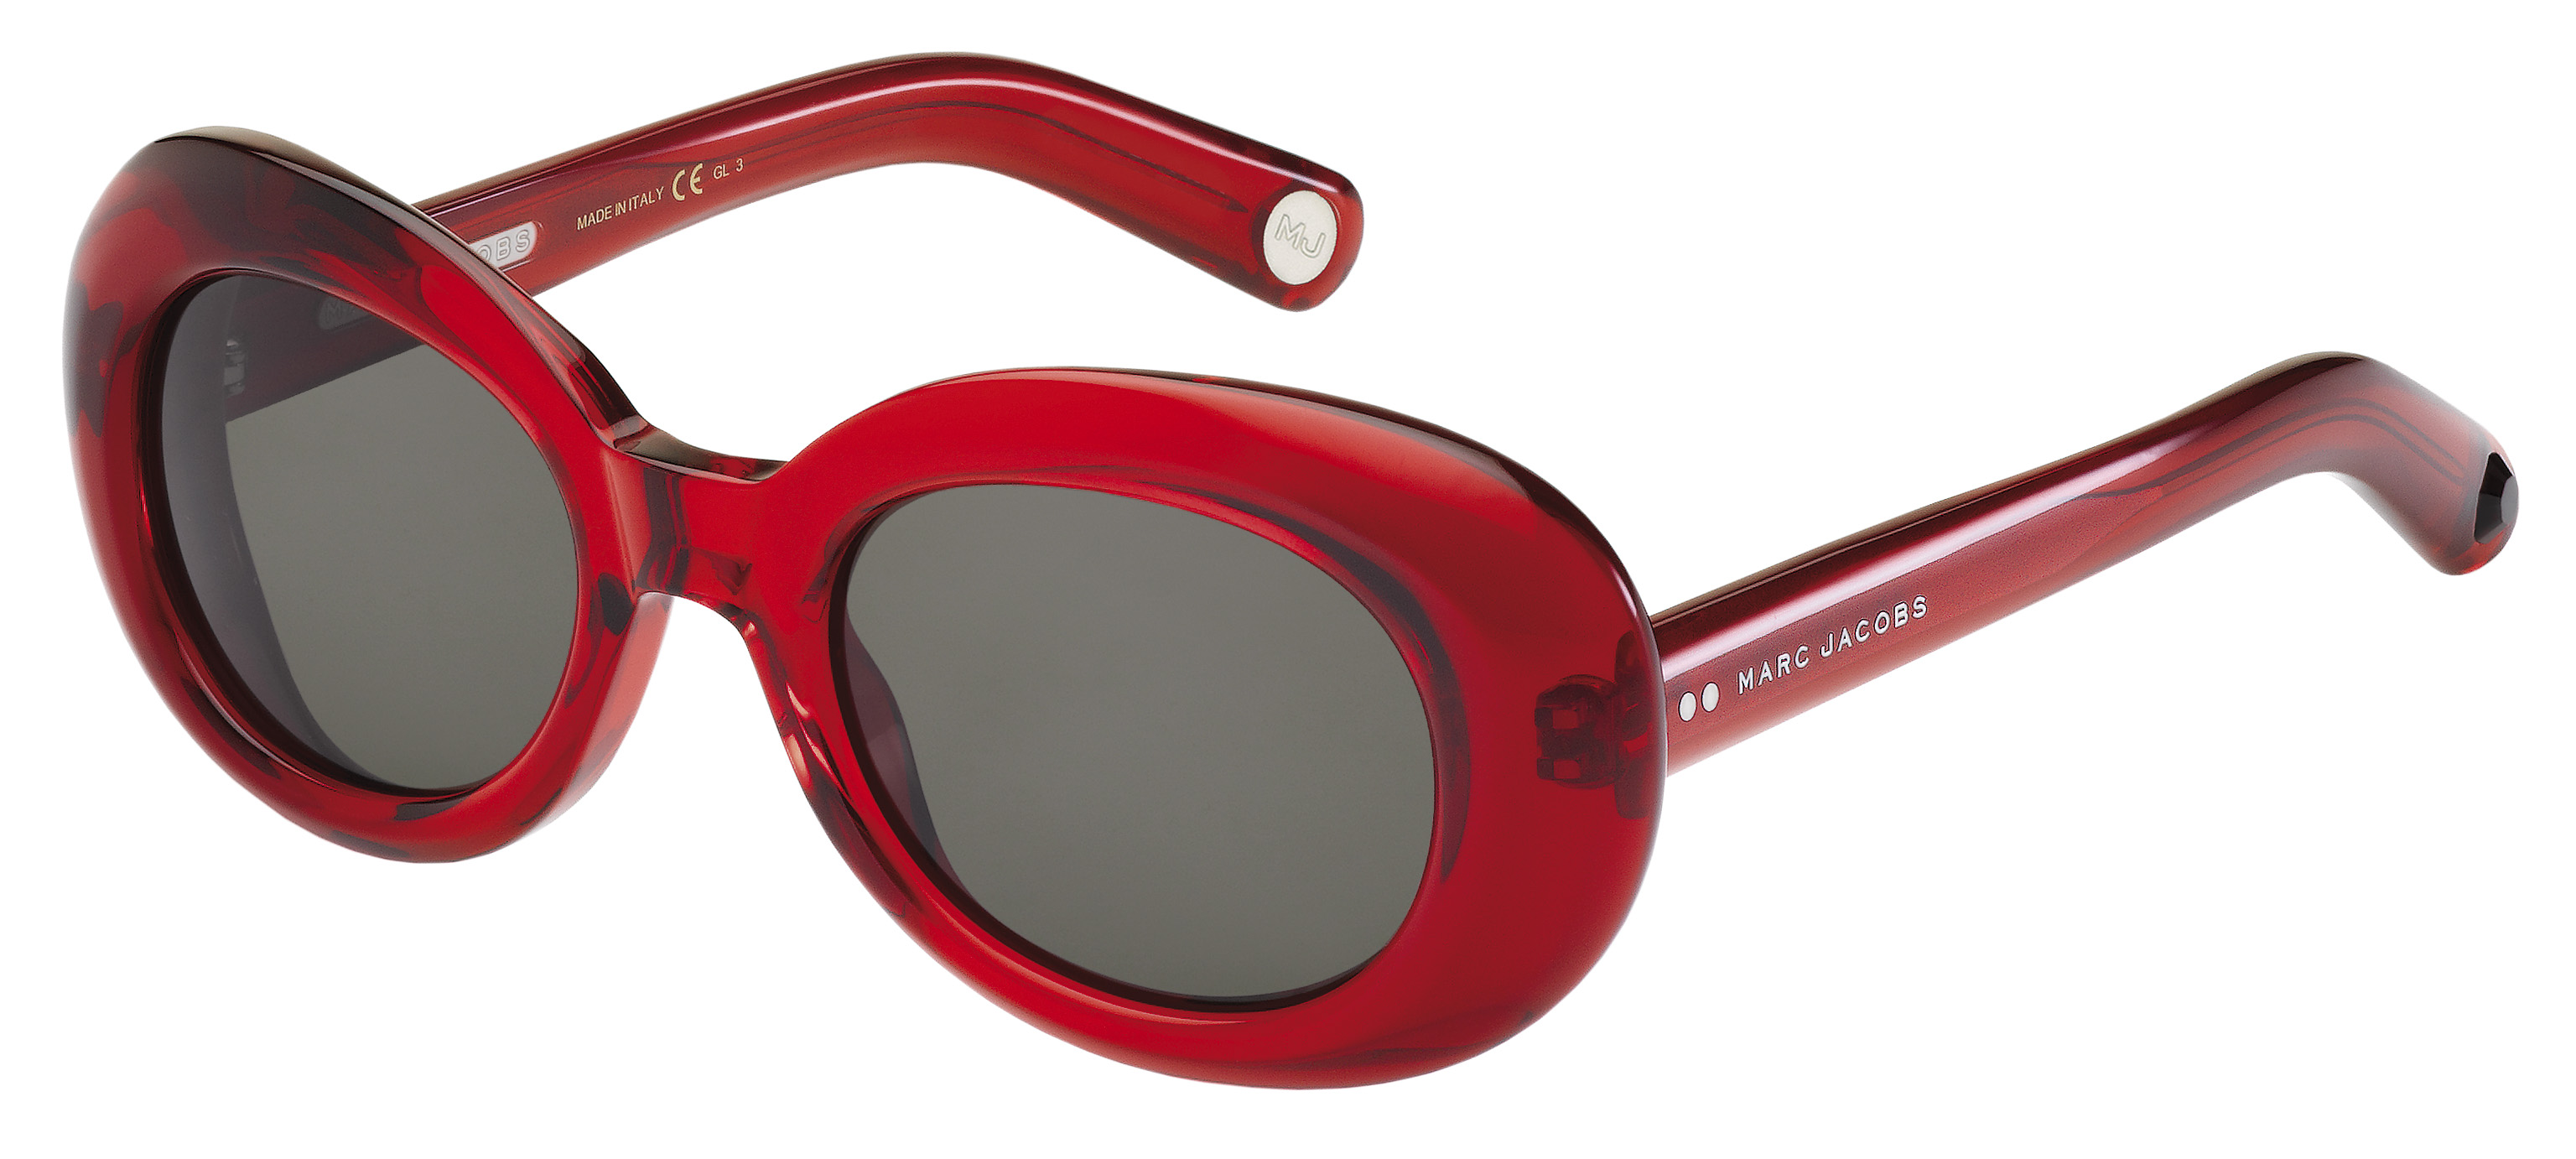 Festa della Mamma 2013: occhiali da sole per un regalo chic e sempre gradito